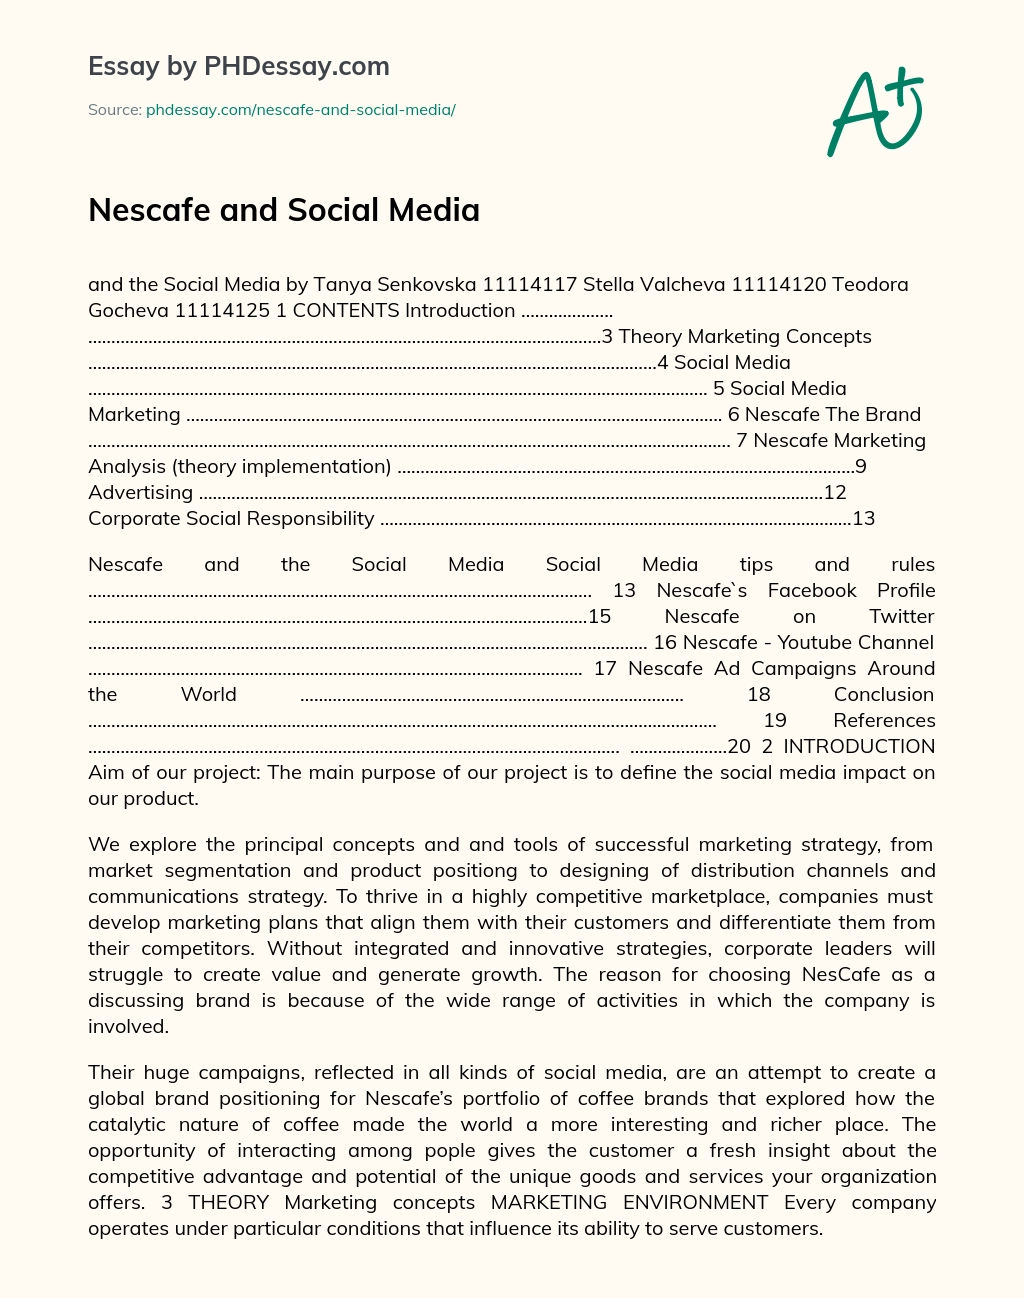 Nescafe and Social Media essay